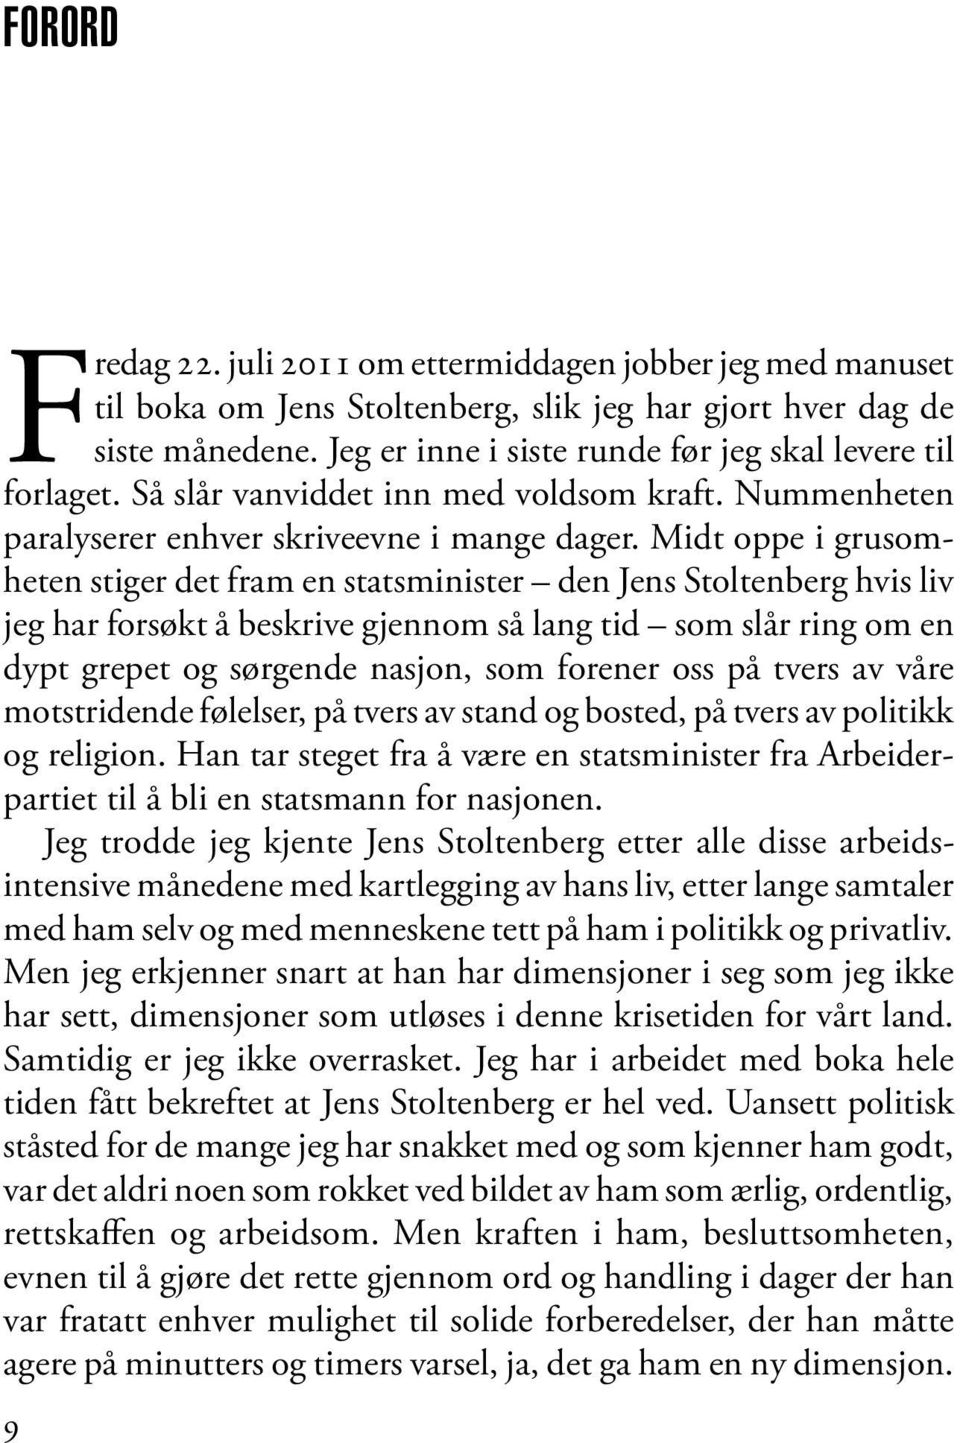 Midt oppe i grusomheten stiger det fram en statsminister den Jens Stoltenberg hvis liv jeg har forsøkt å beskrive gjennom så lang tid som slår ring om en dypt grepet og sørgende nasjon, som forener